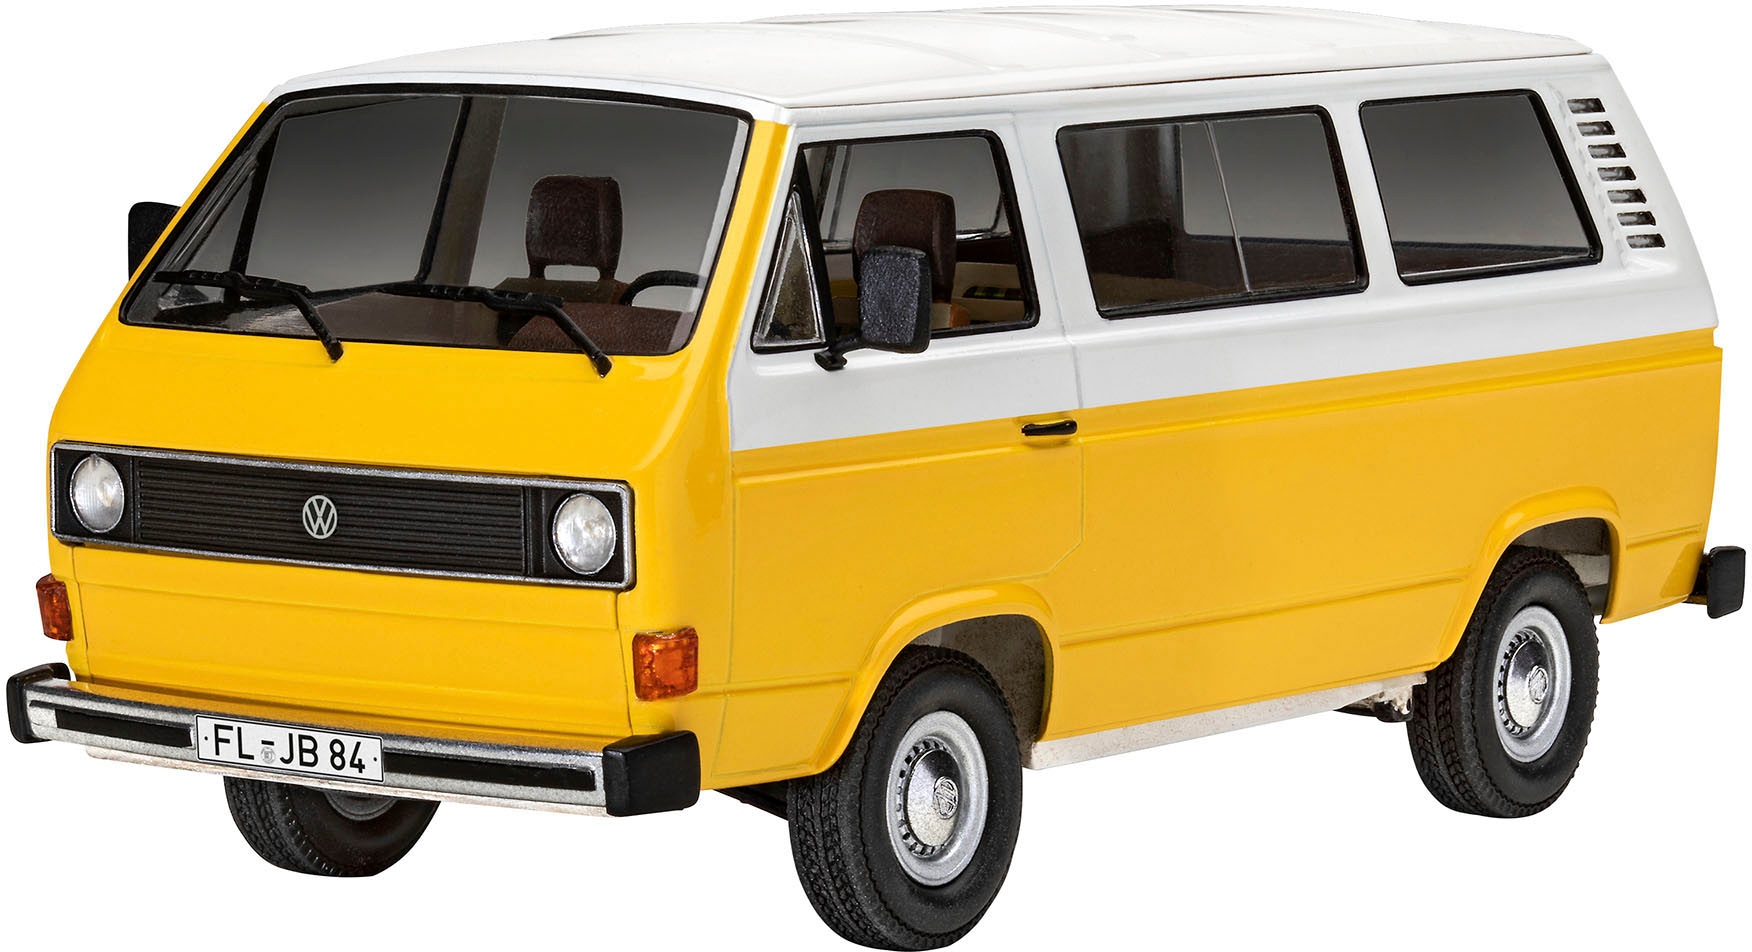 Revell® Modellbausatz »Volkswagen VW T3 Bus (Bulli)«, 1:25, Made in Europe